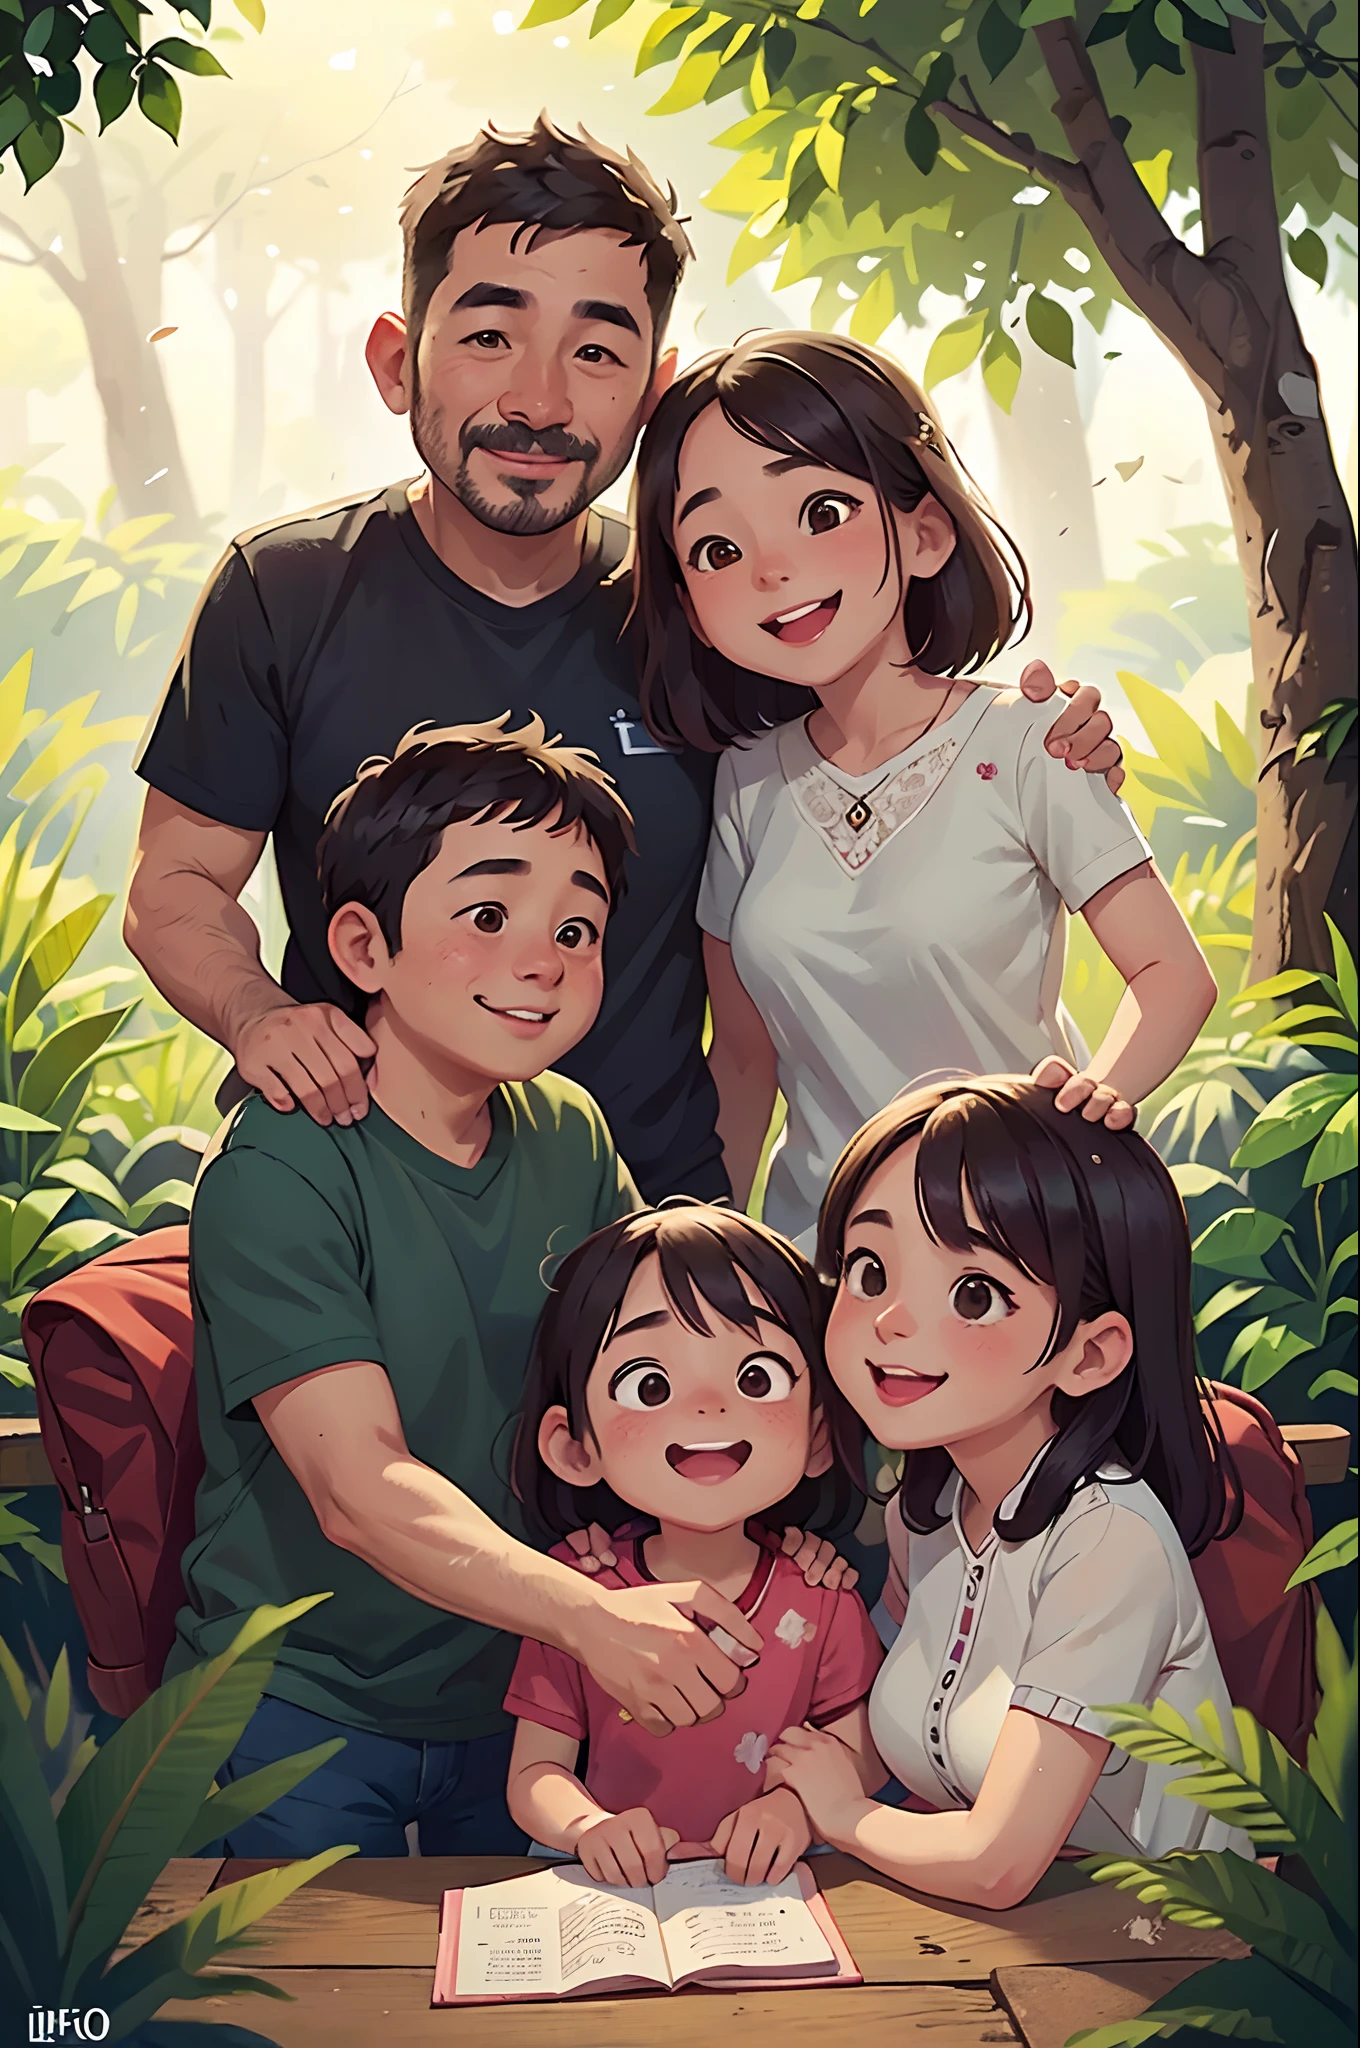 Indonesisch, Familie (Vater, Mutter und Tochter), lächeln, Liebe, glückliches Zuhause, und umgeben von Natur. Ultra-detaillierte Illustration mit toller Beleuchtung und einem klaren Bild. 8k